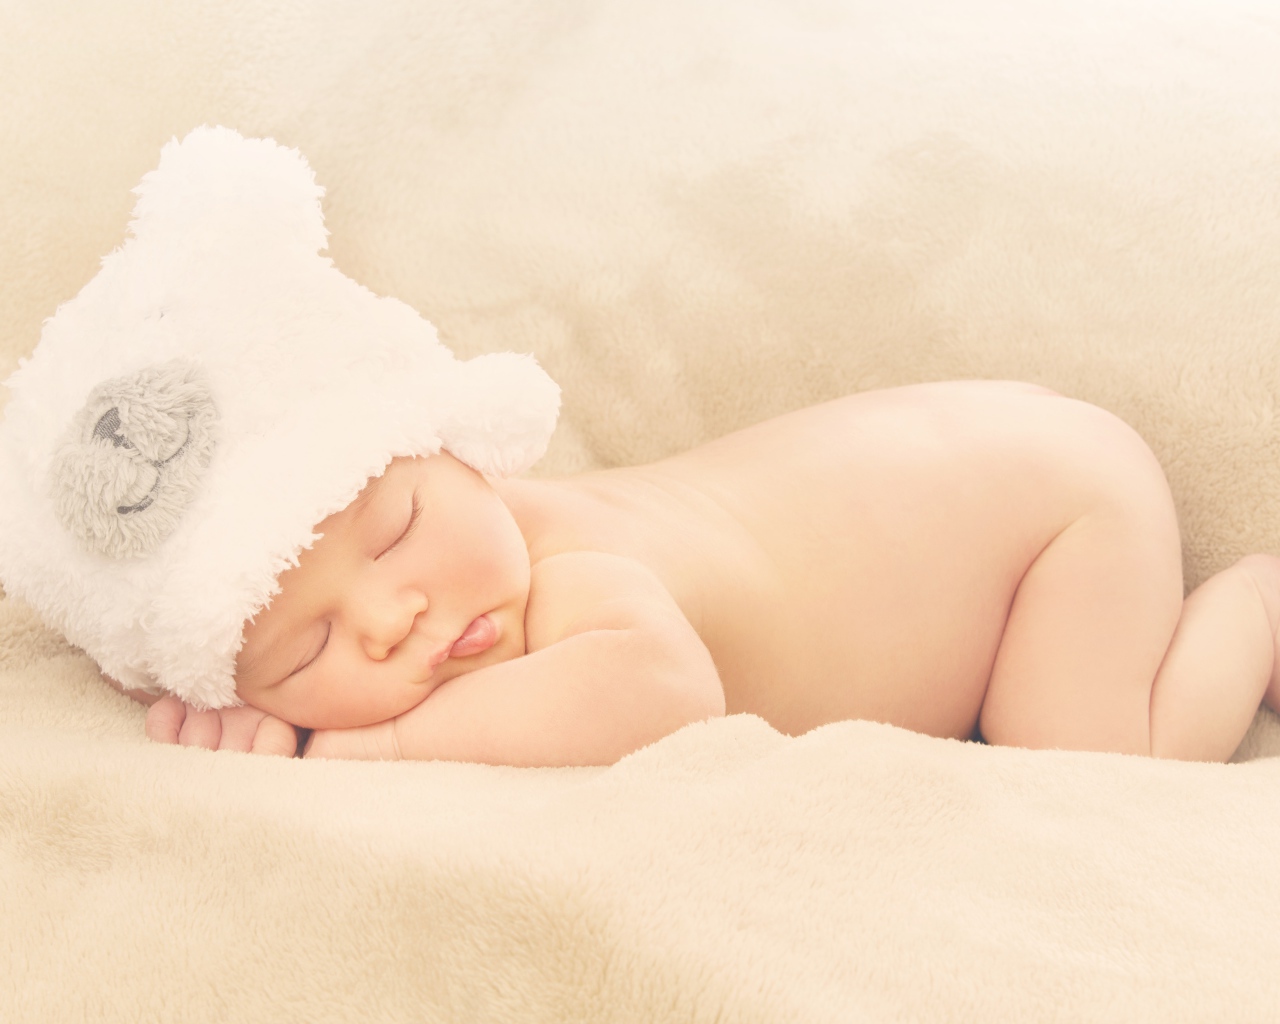 Грудной ребенок с белой шапке спит на кровати